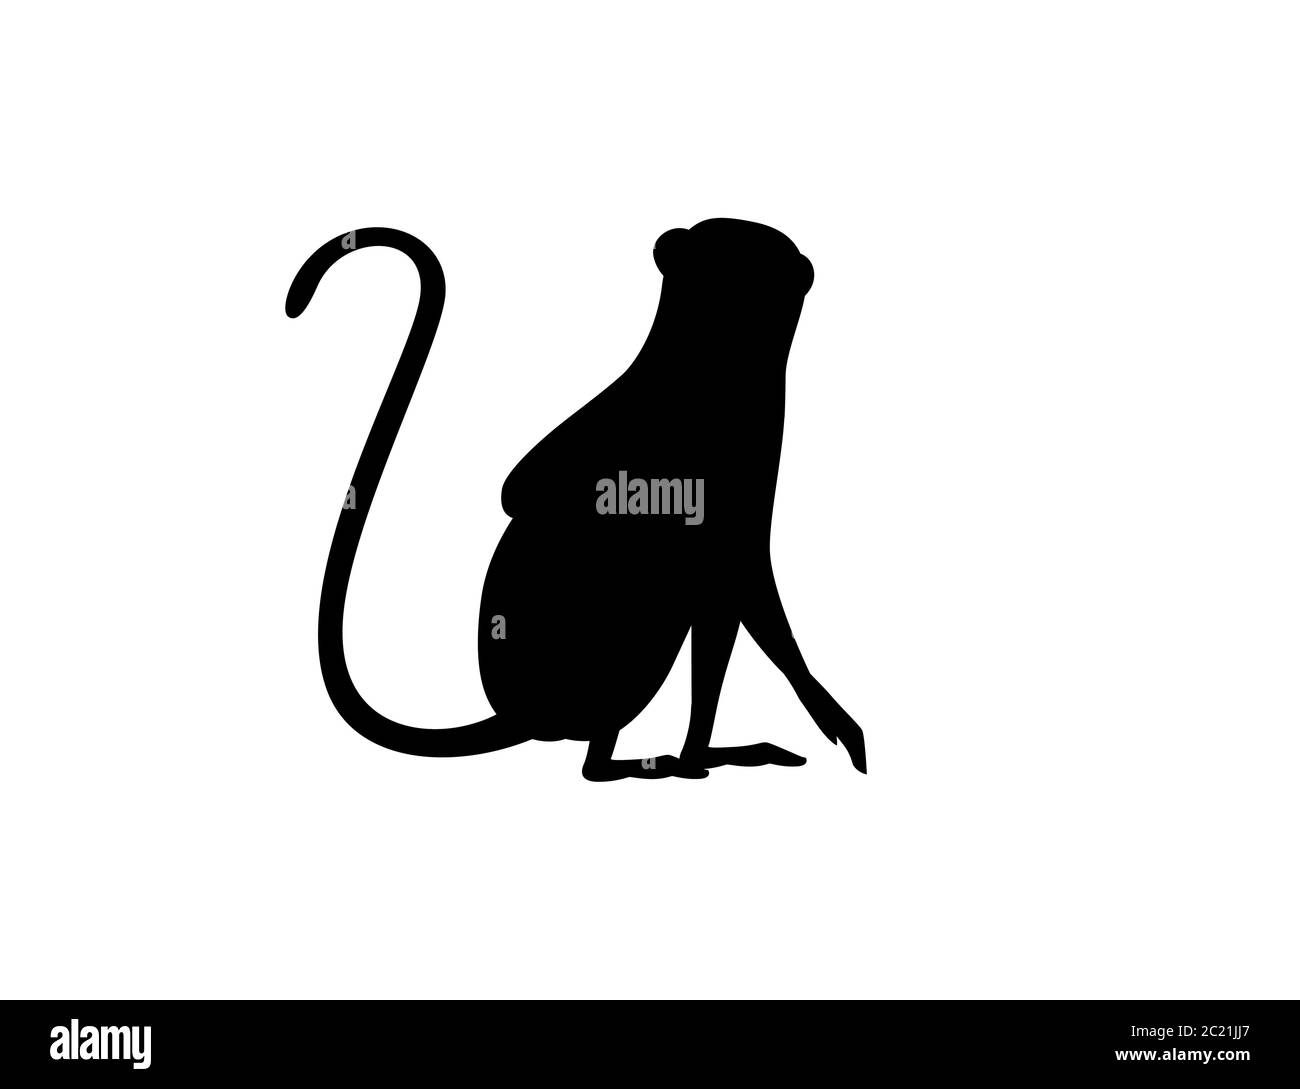 Silhouette noire mignon singe vervet dessin animé animal dessin vectoriel plat illustration isolée sur fond blanc Illustration de Vecteur